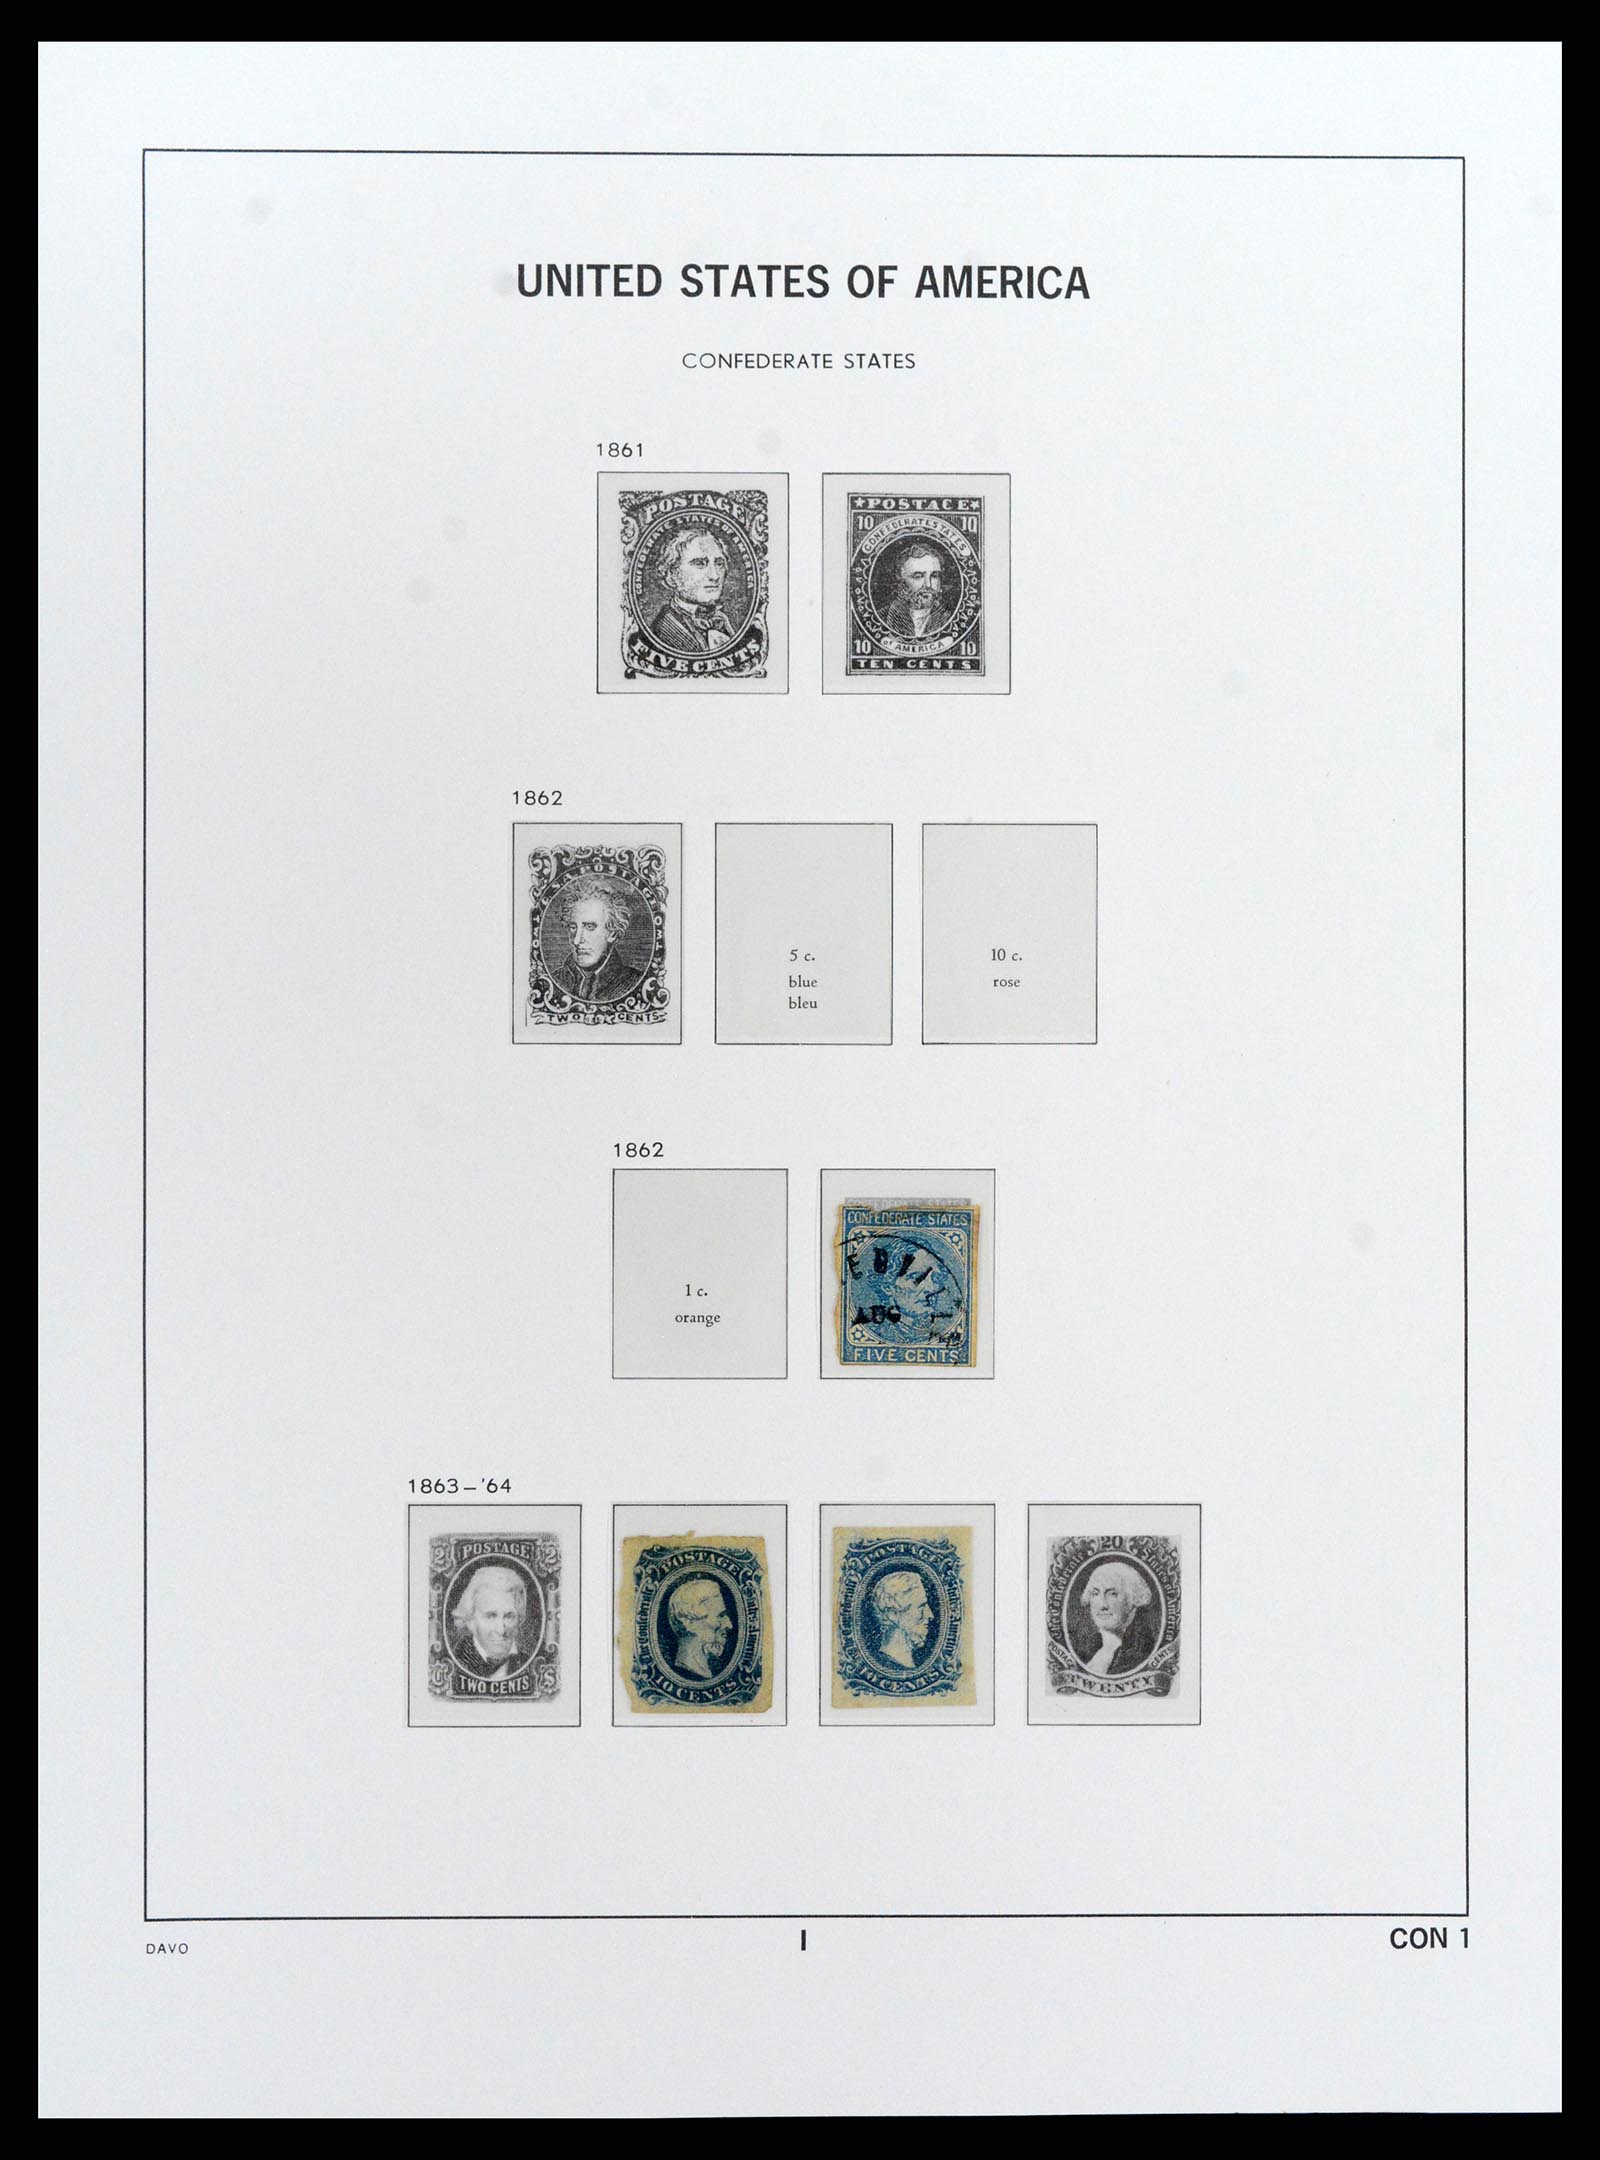 37810 072 - Stamp Collection 37810 USA 1851-2000.